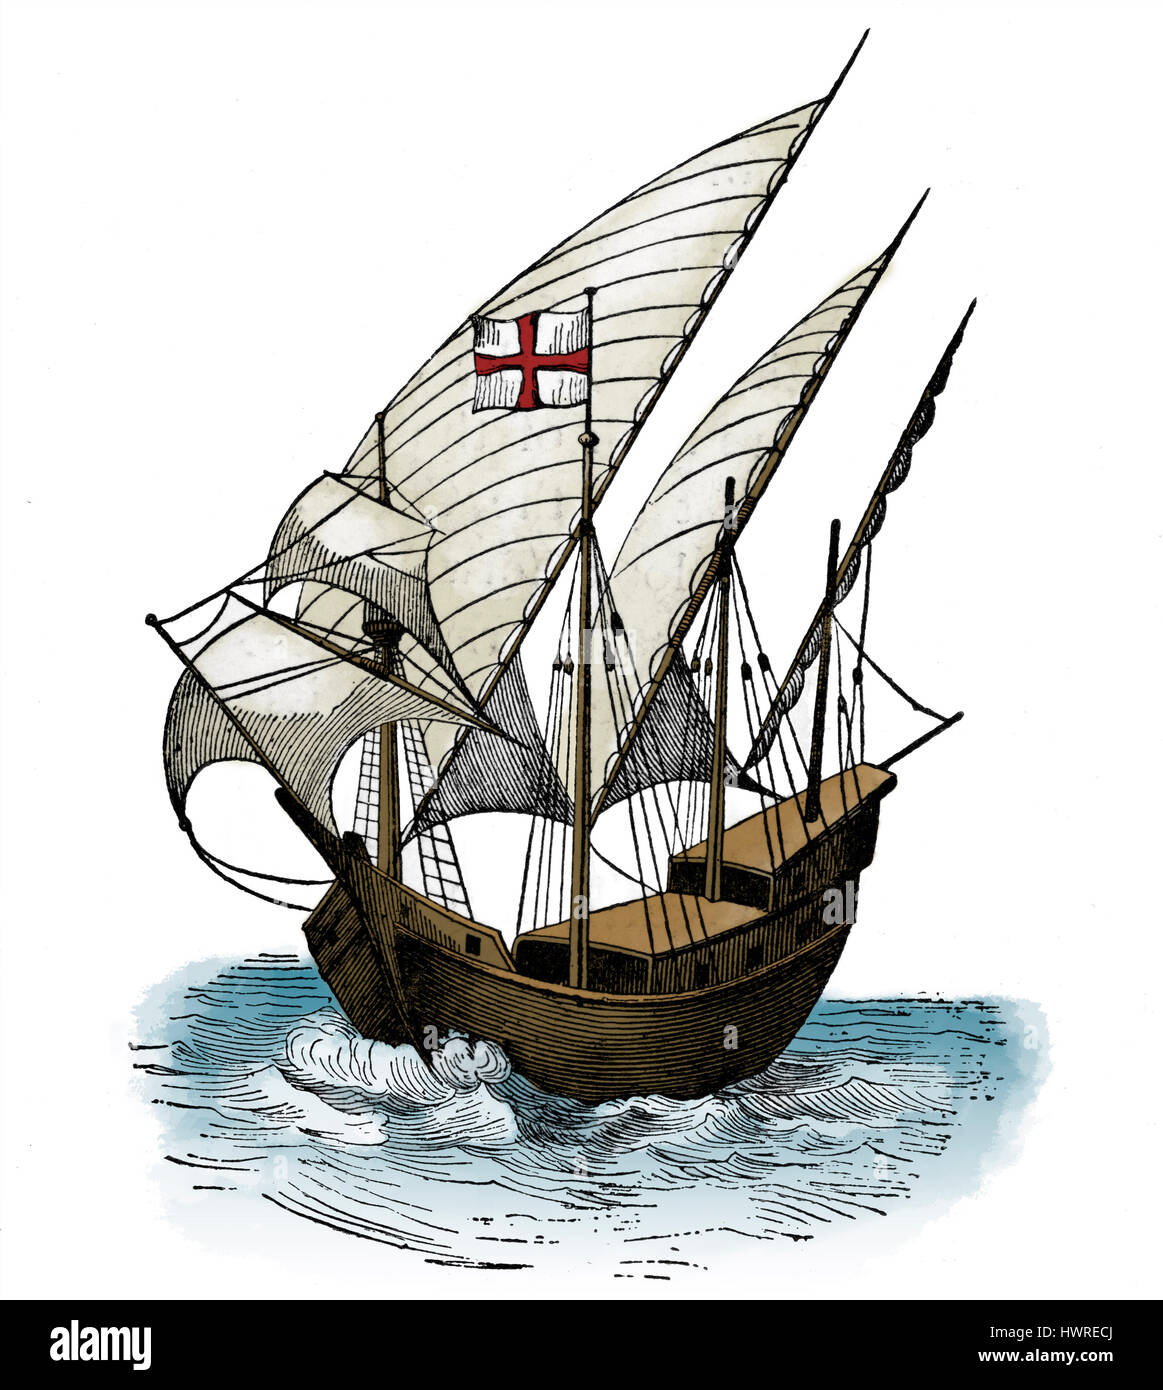 Karavelle des 15. Jahrhunderts. Schiff von Piraten verwendet. (Jurien De La Graviere) Stockfoto